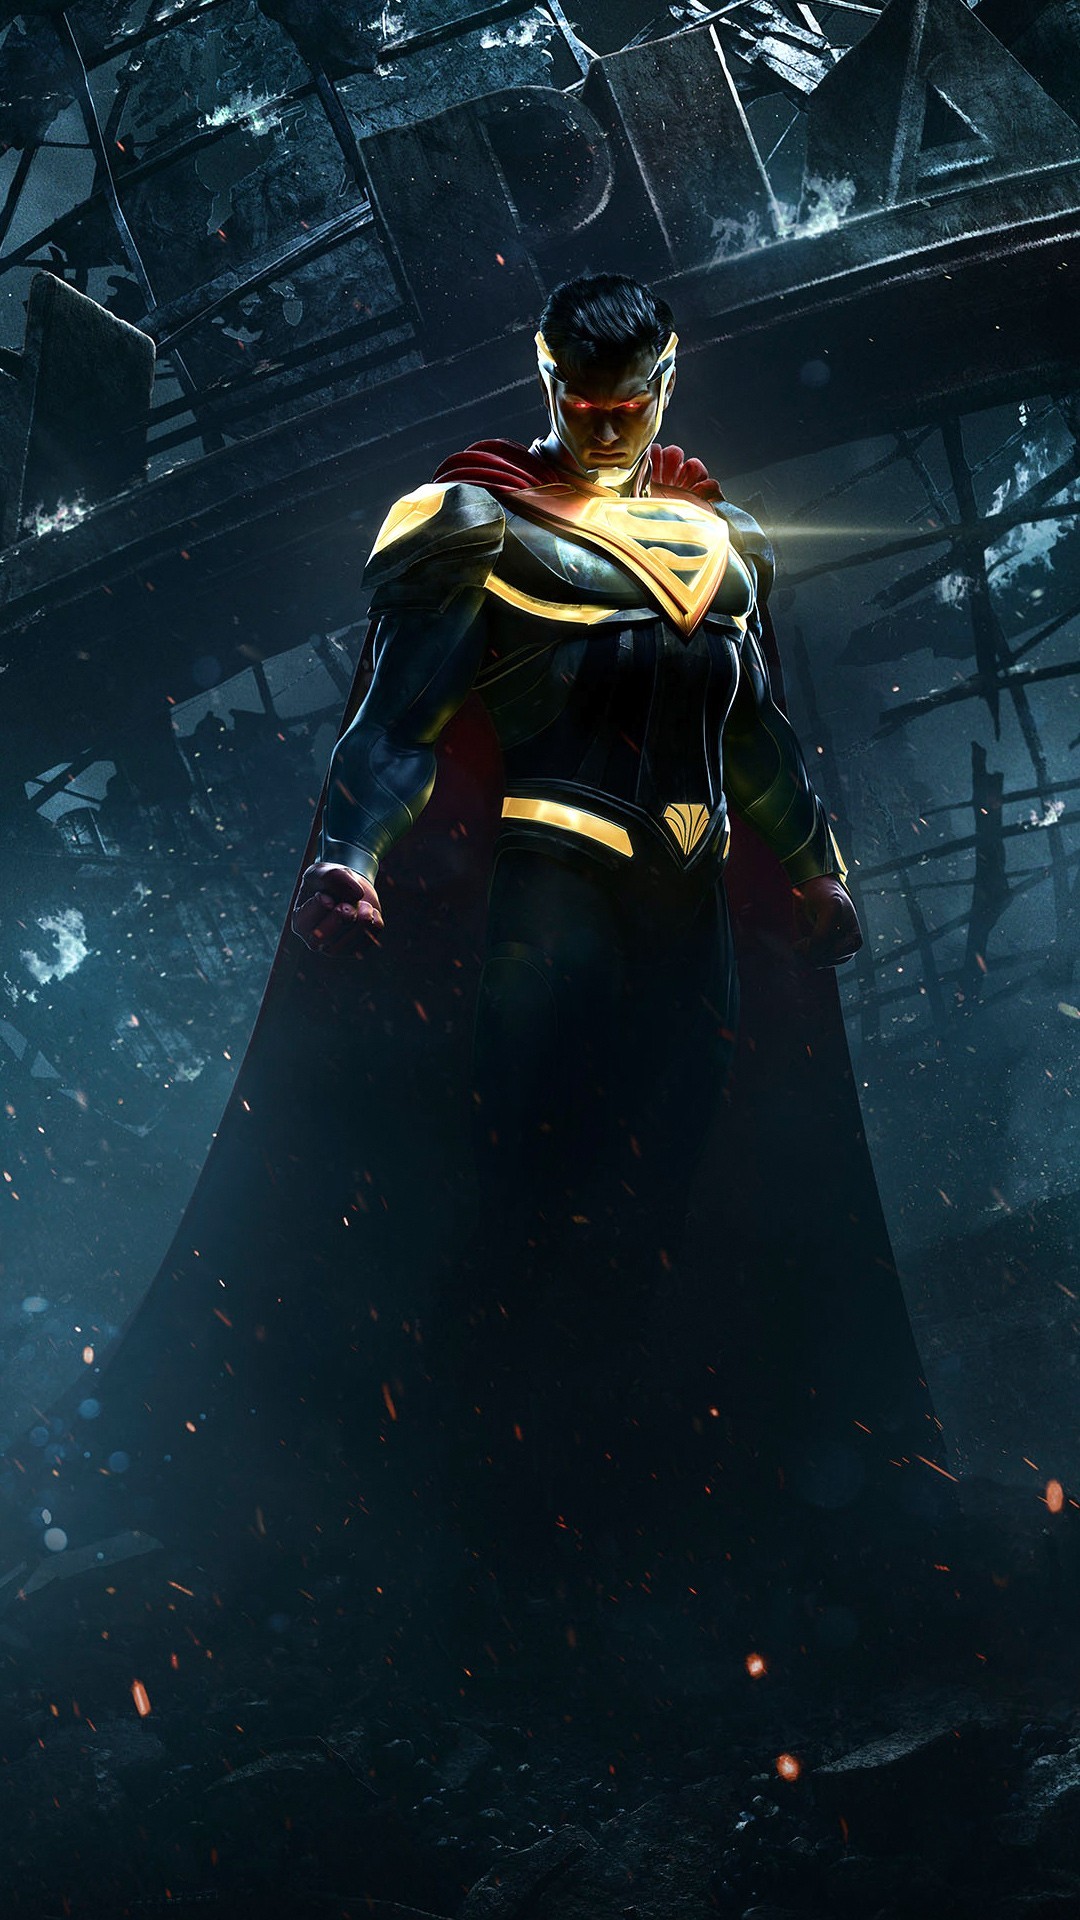 fond d'écran superman hd pour android,homme chauve souris,super héros,personnage fictif,superman,ligue de justice